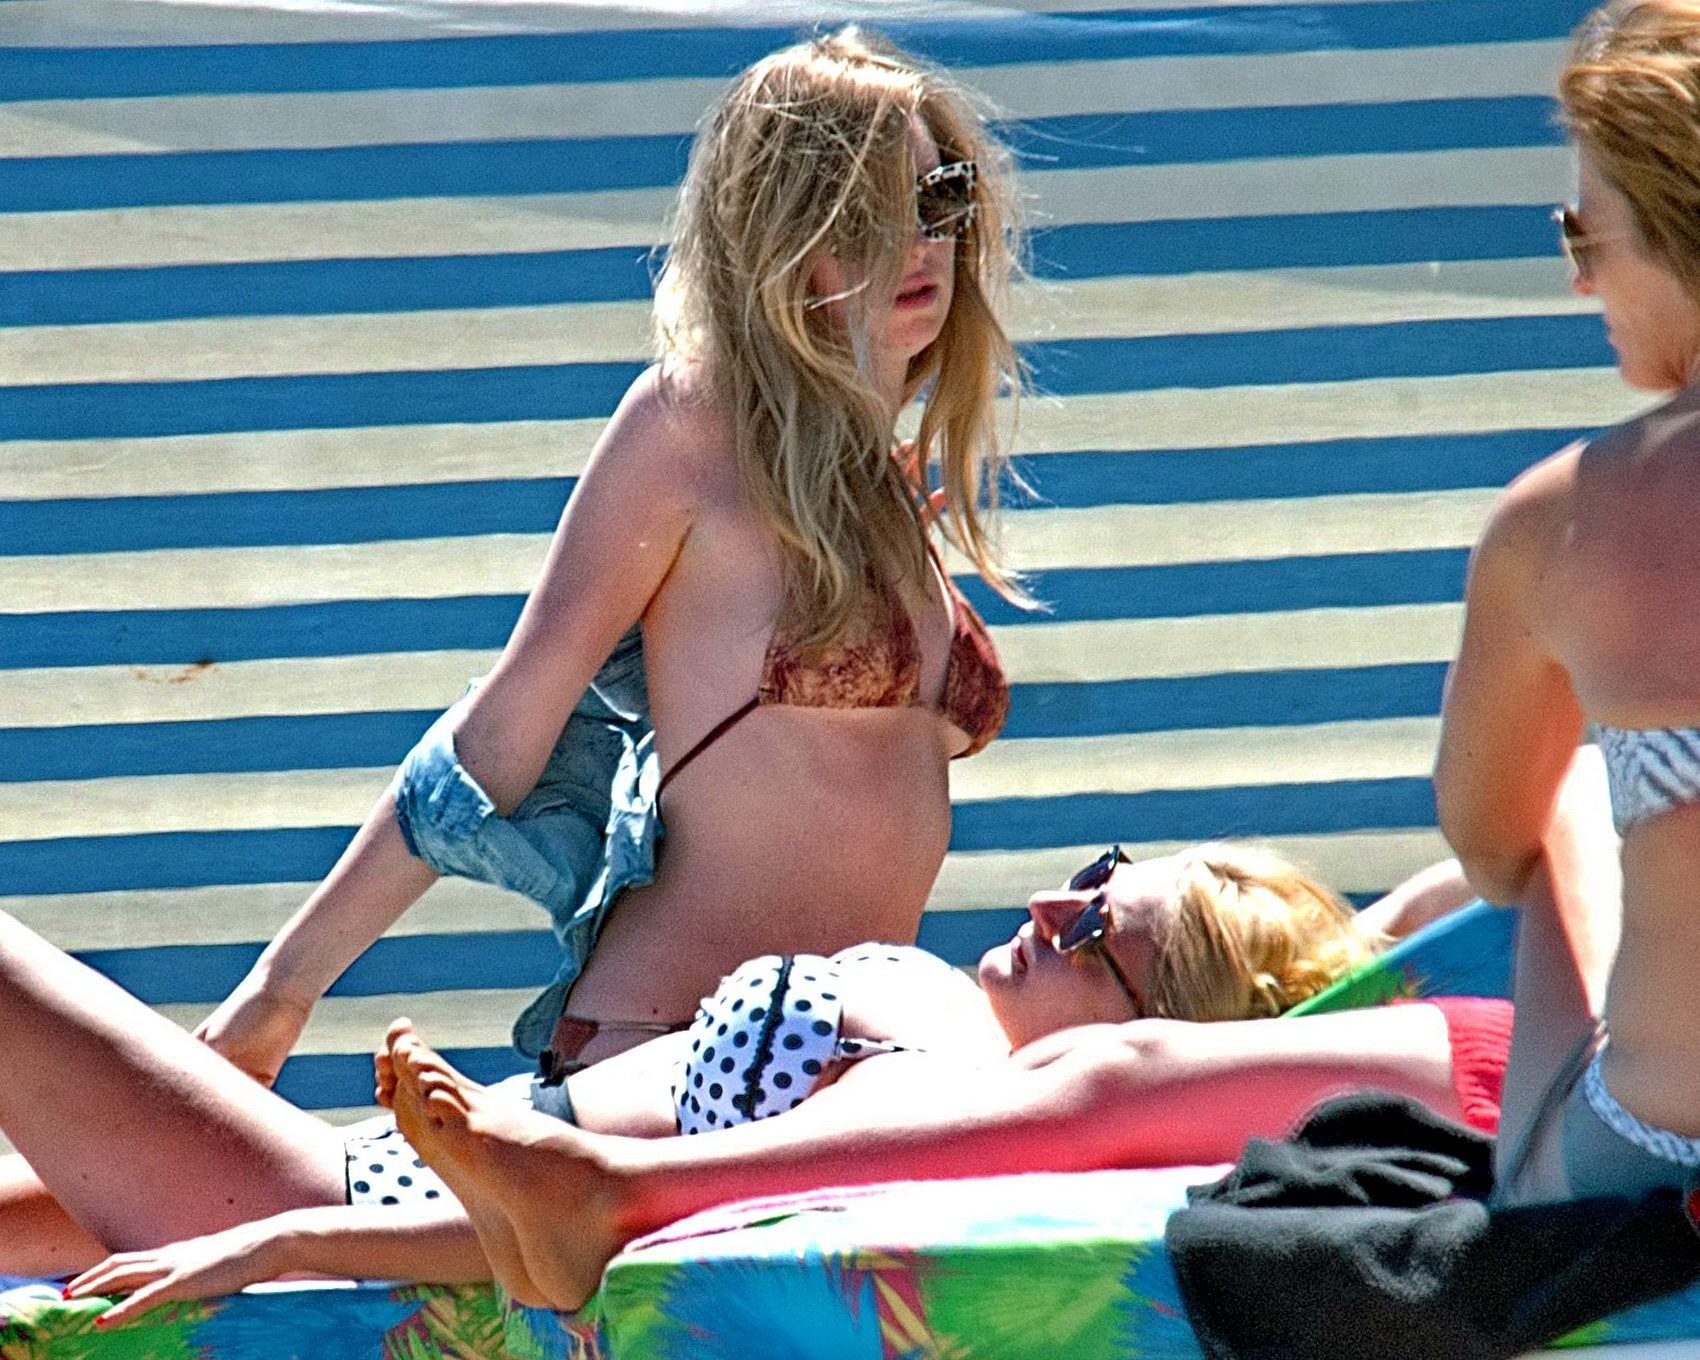 Diana vickers portant un bikini imprimé loup au bord d'une piscine en Espagne
 #75196718